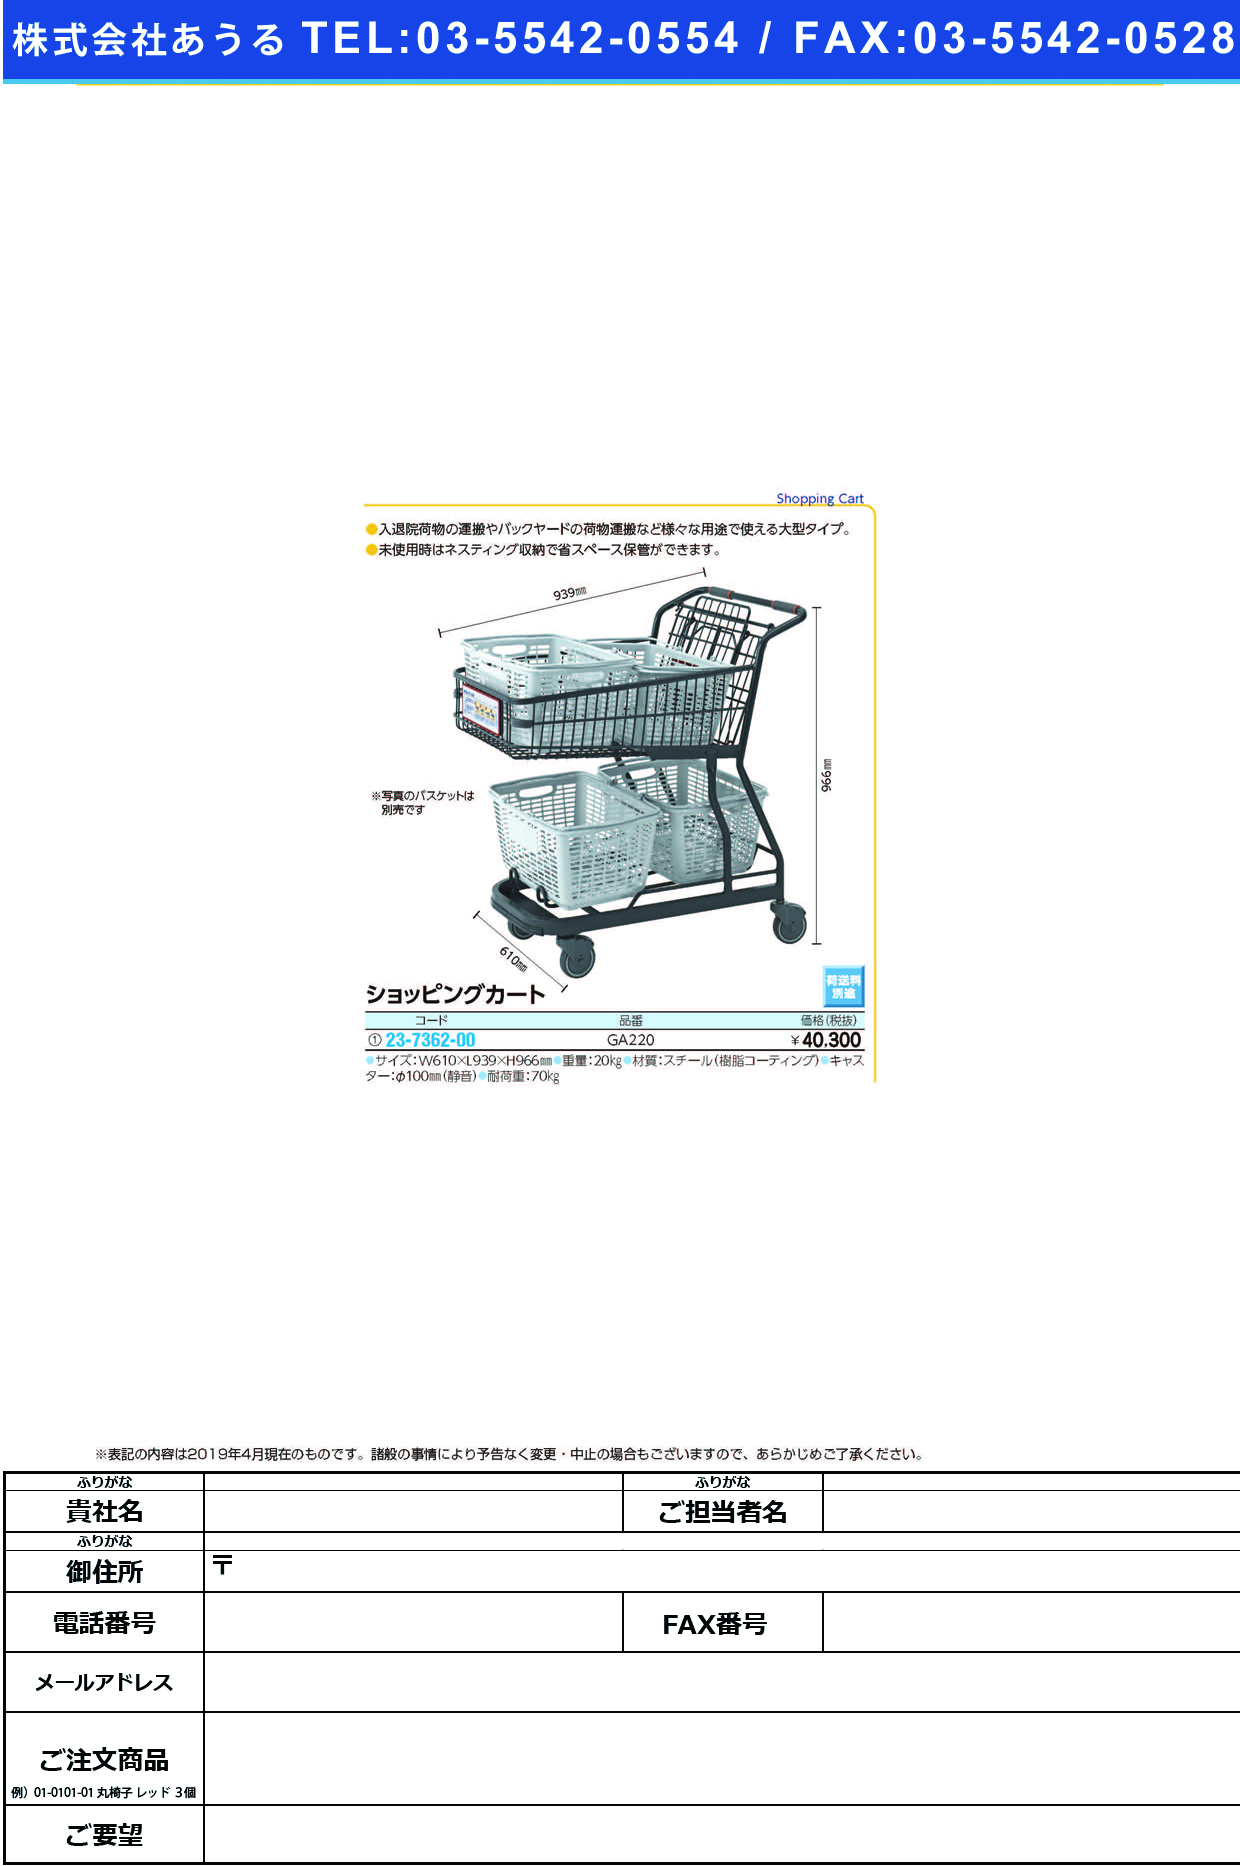 (23-7362-00)ショッピングカート（７６Ｇ） GA220 ｼｮｯﾋﾟﾝｸﾞｶｰﾄ(河淳)【1台単位】【2019年カタログ商品】